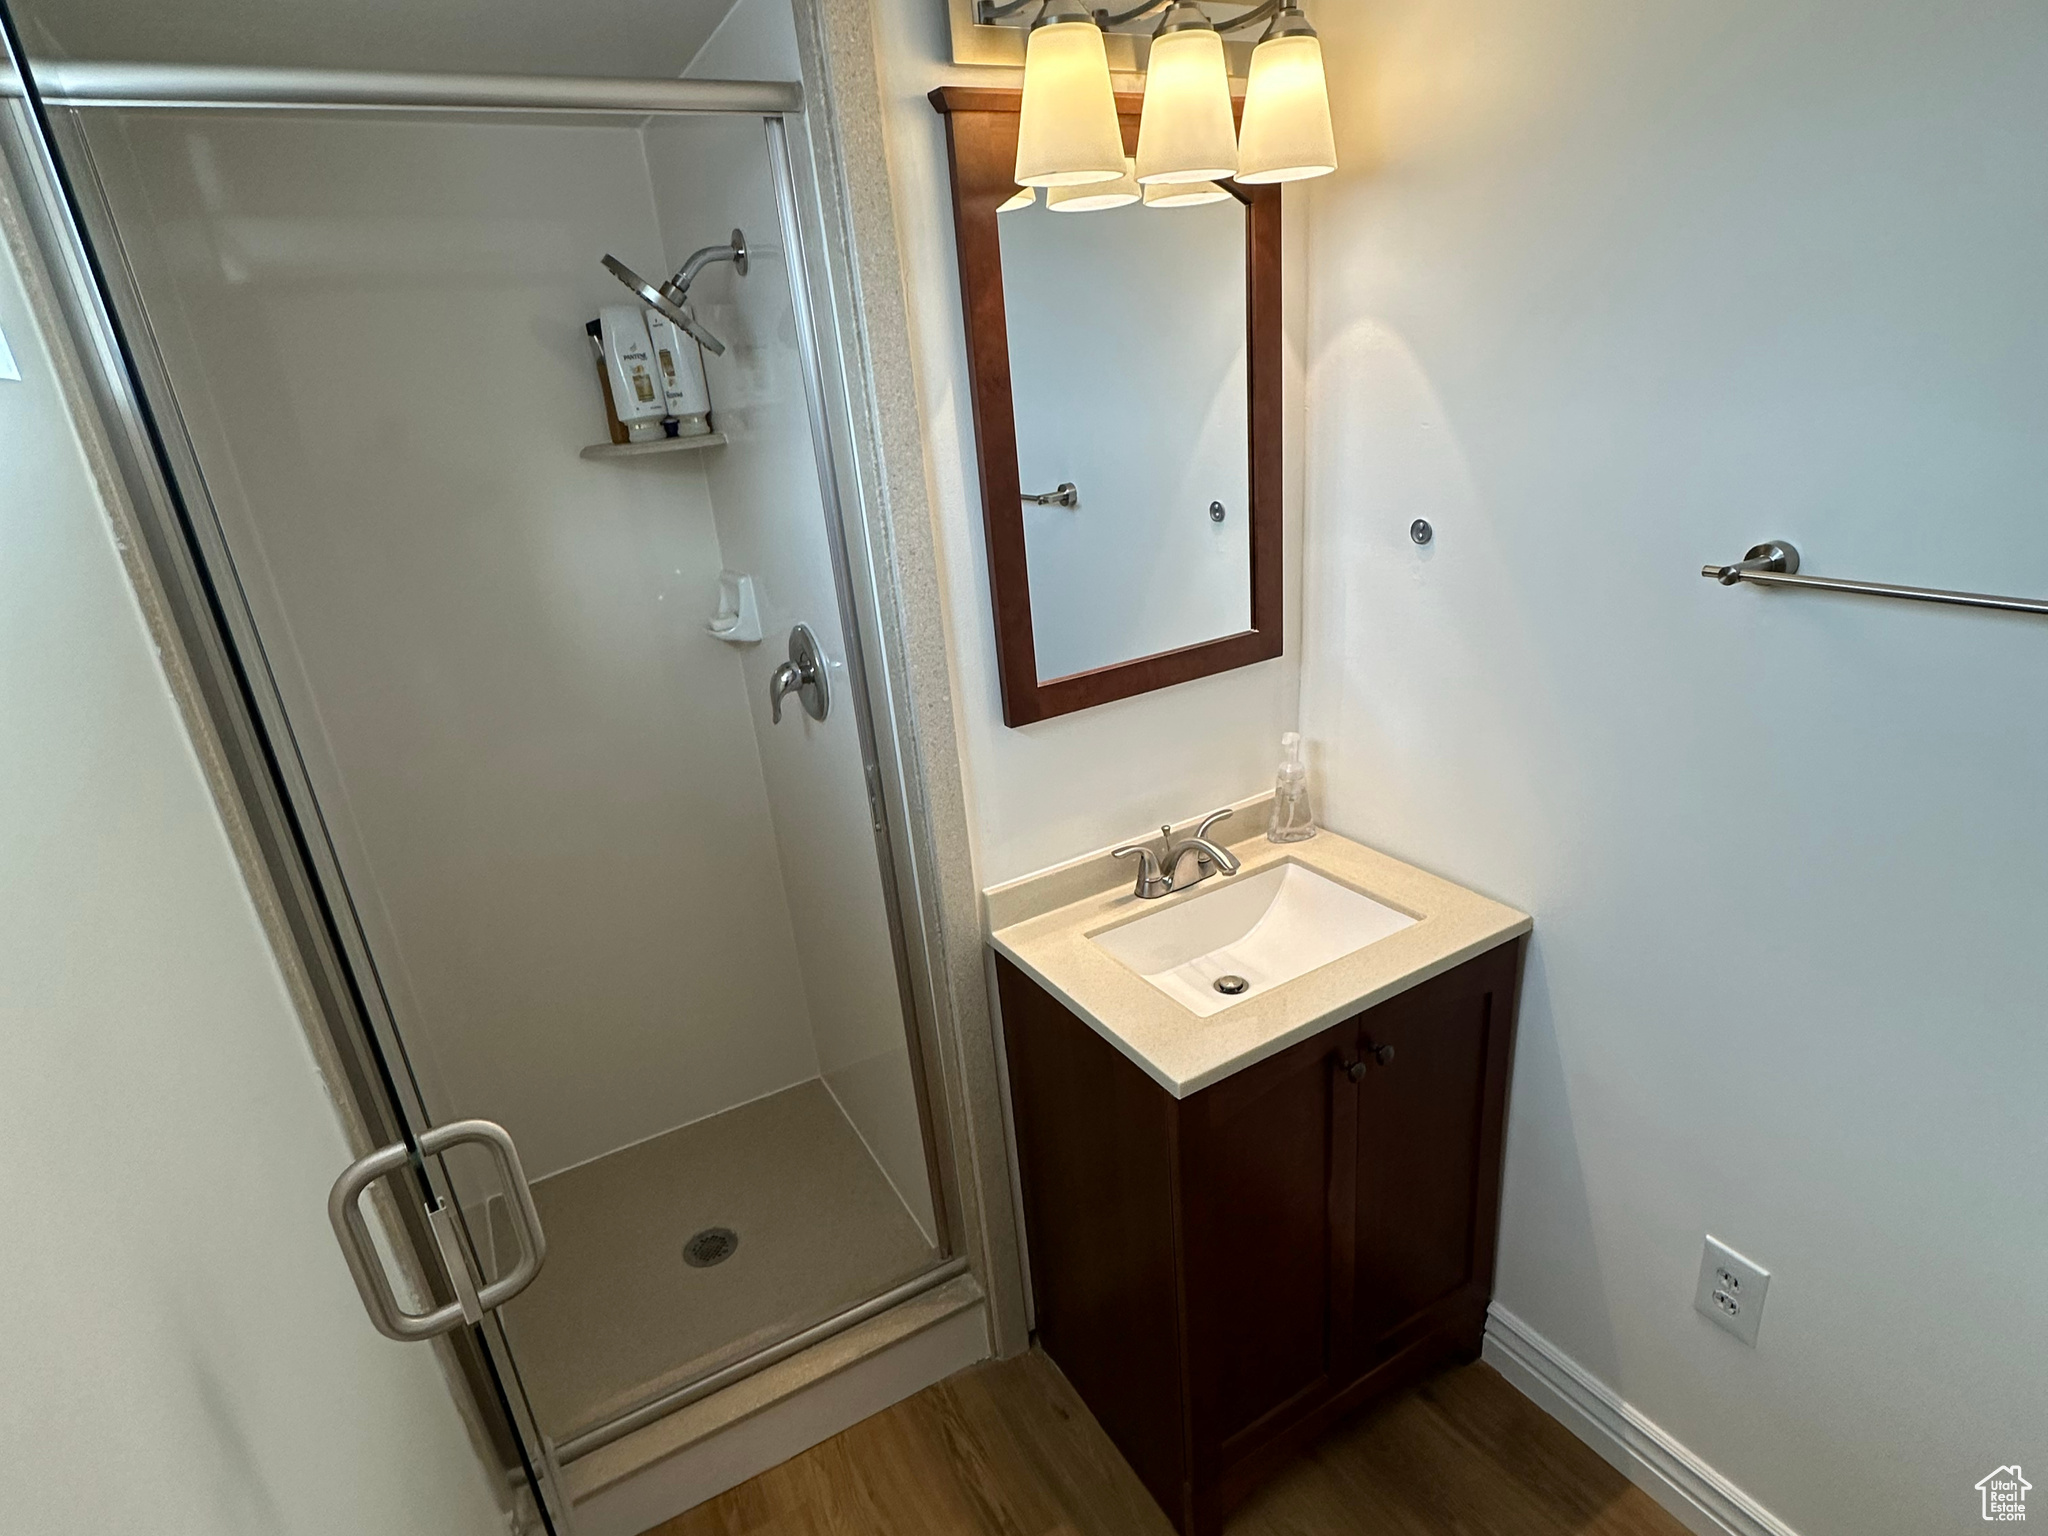 Bathroom featuring ornamental molding